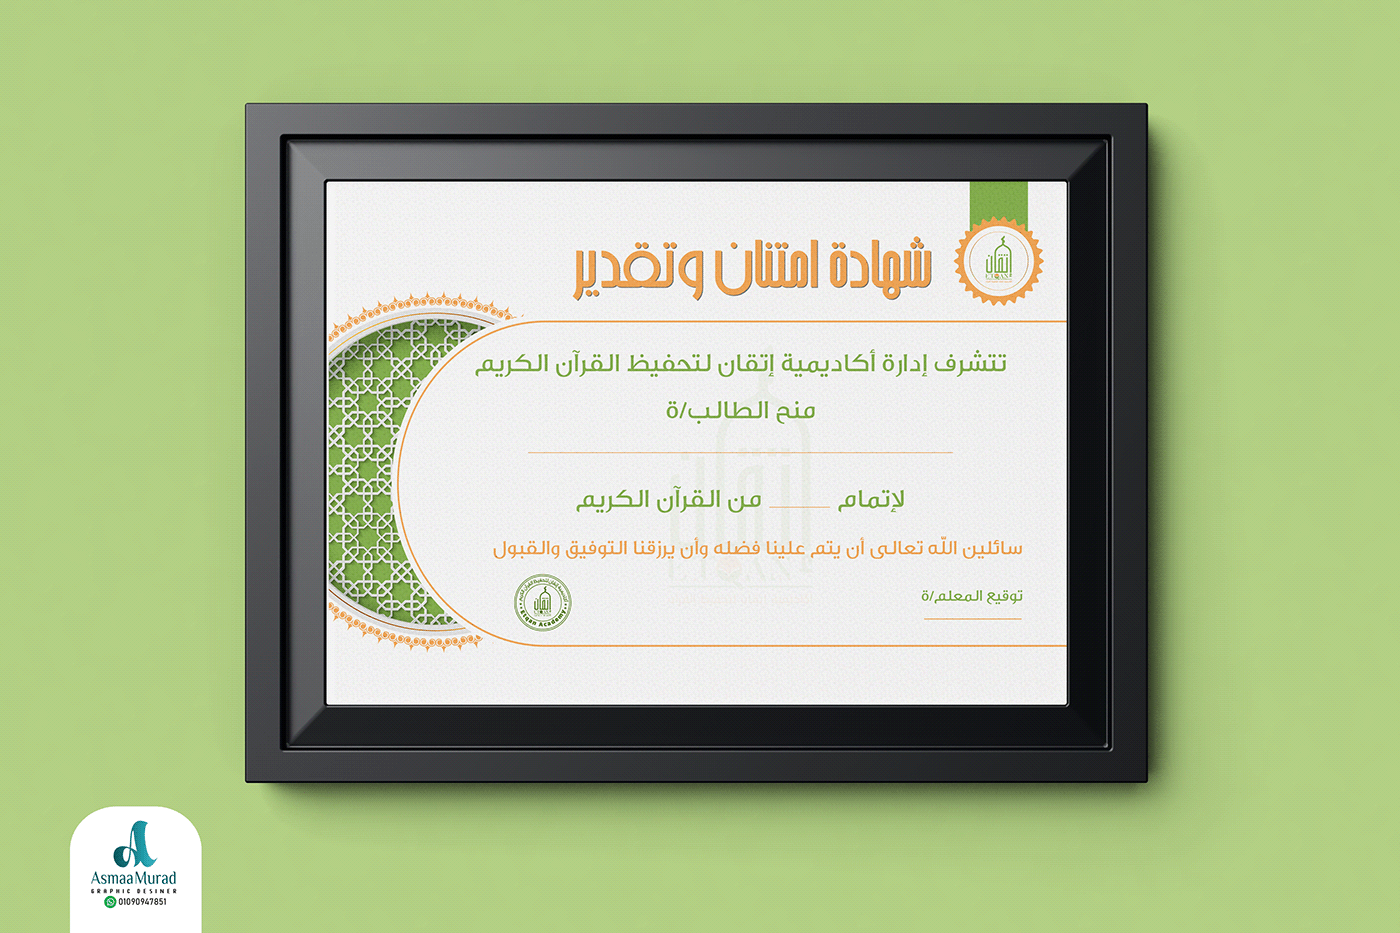 Education school student Appreciation certificate award certificate design